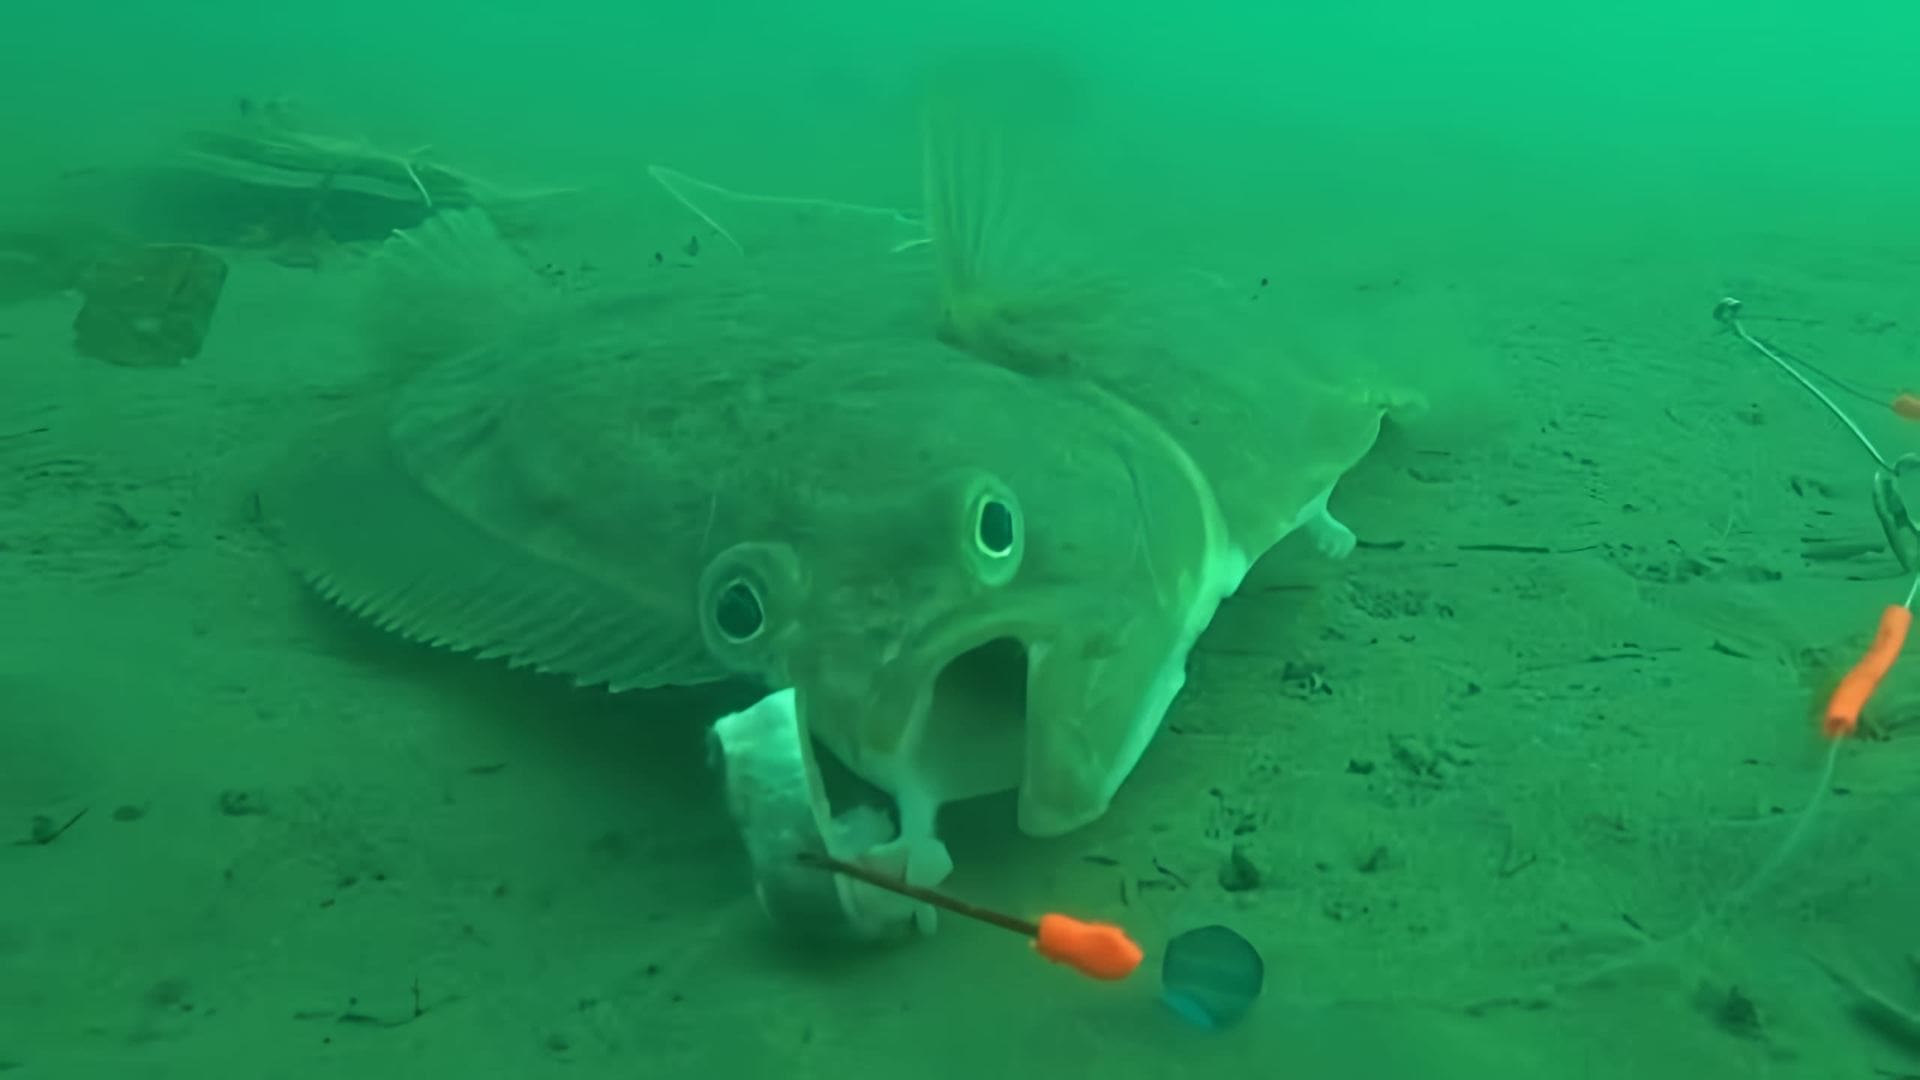 "Камбала 2018 Уссурийский залив Юнга Flounder 2018" - это видео-ролик, который демонстрирует процесс ловли камбалы в Уссурийском заливе в 2018 году